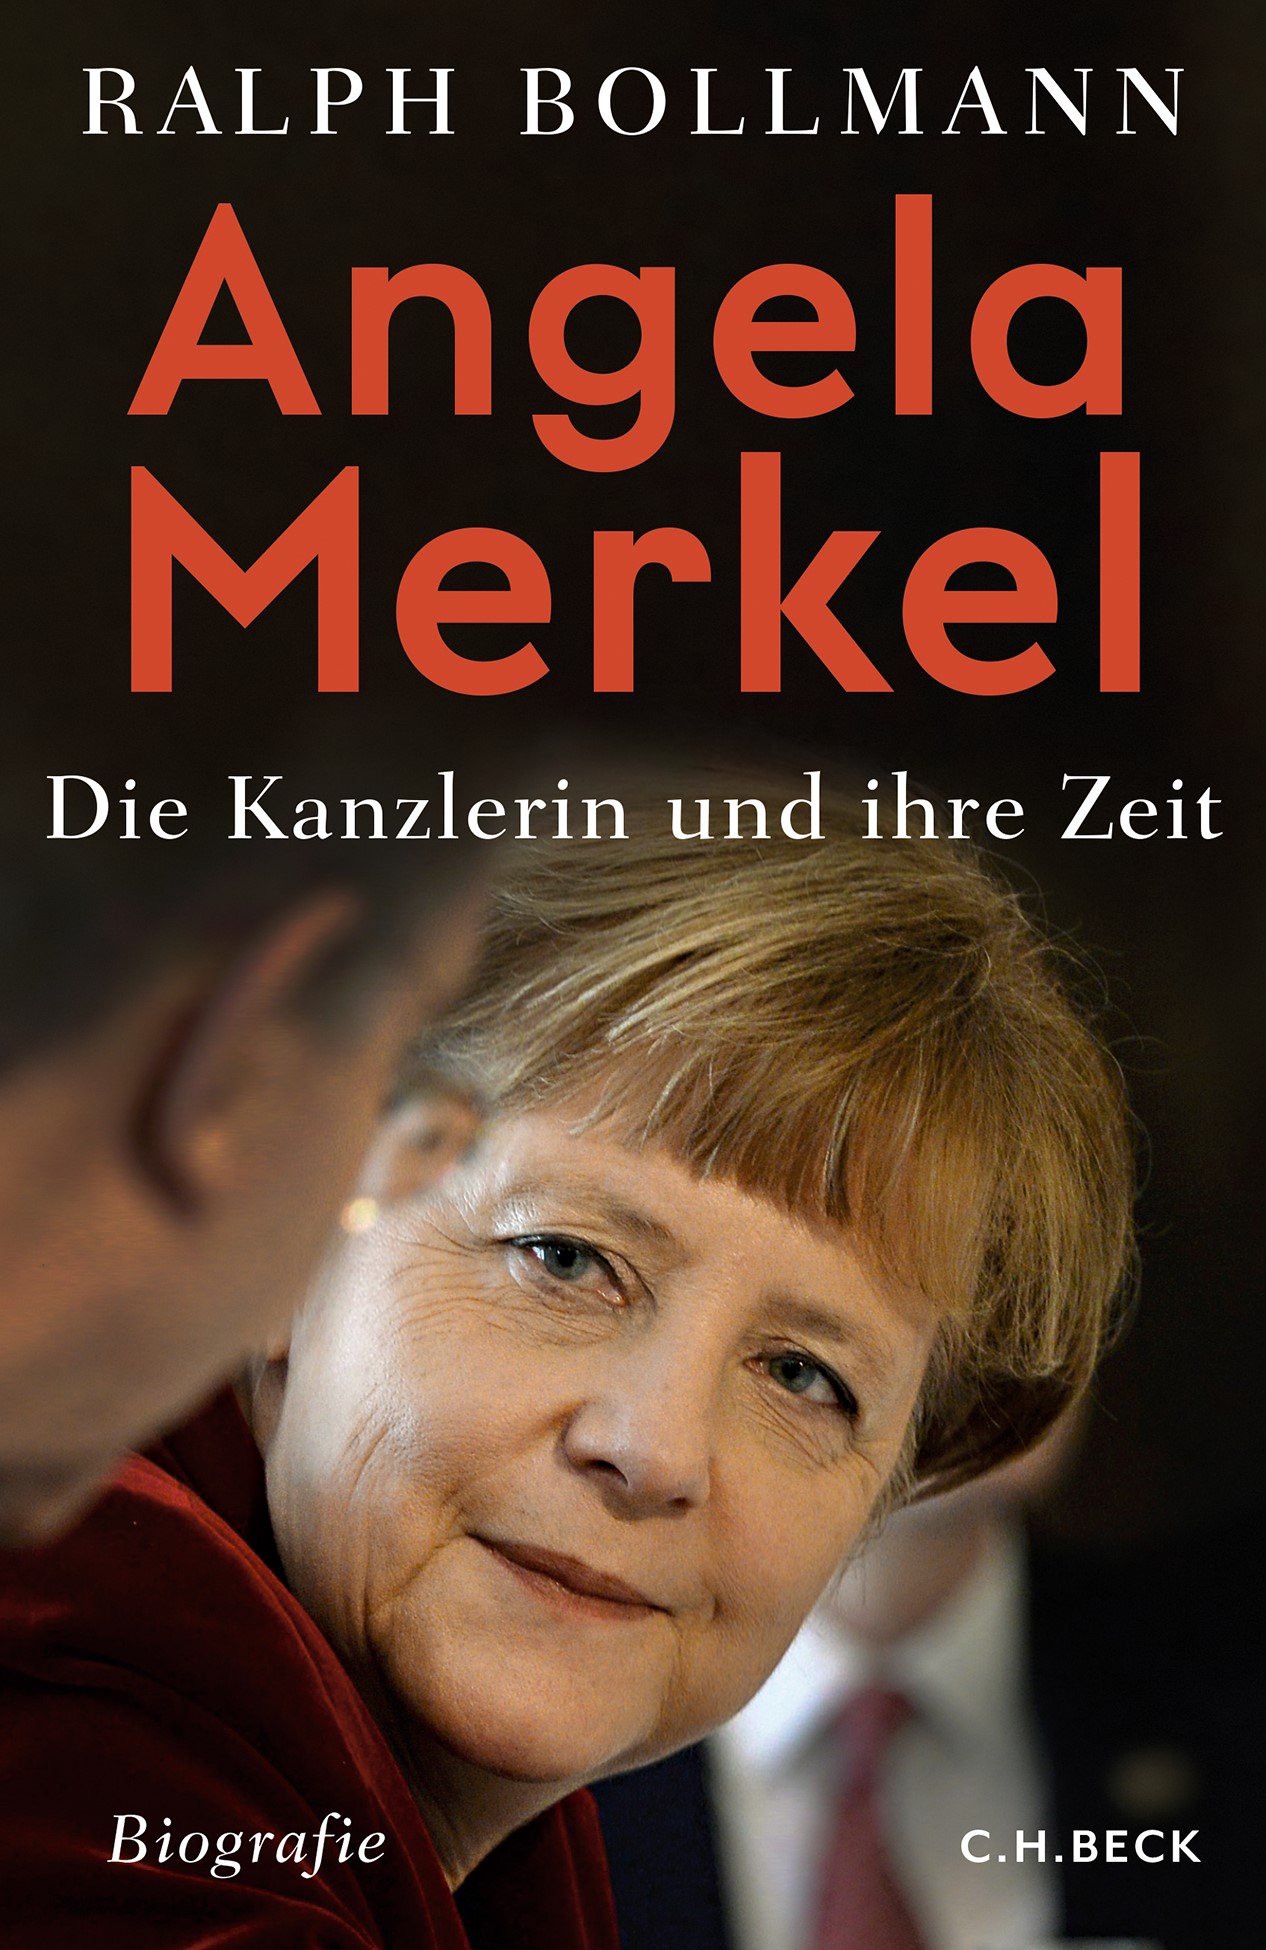 Cover: Bollmann, Ralph, Angela Merkel